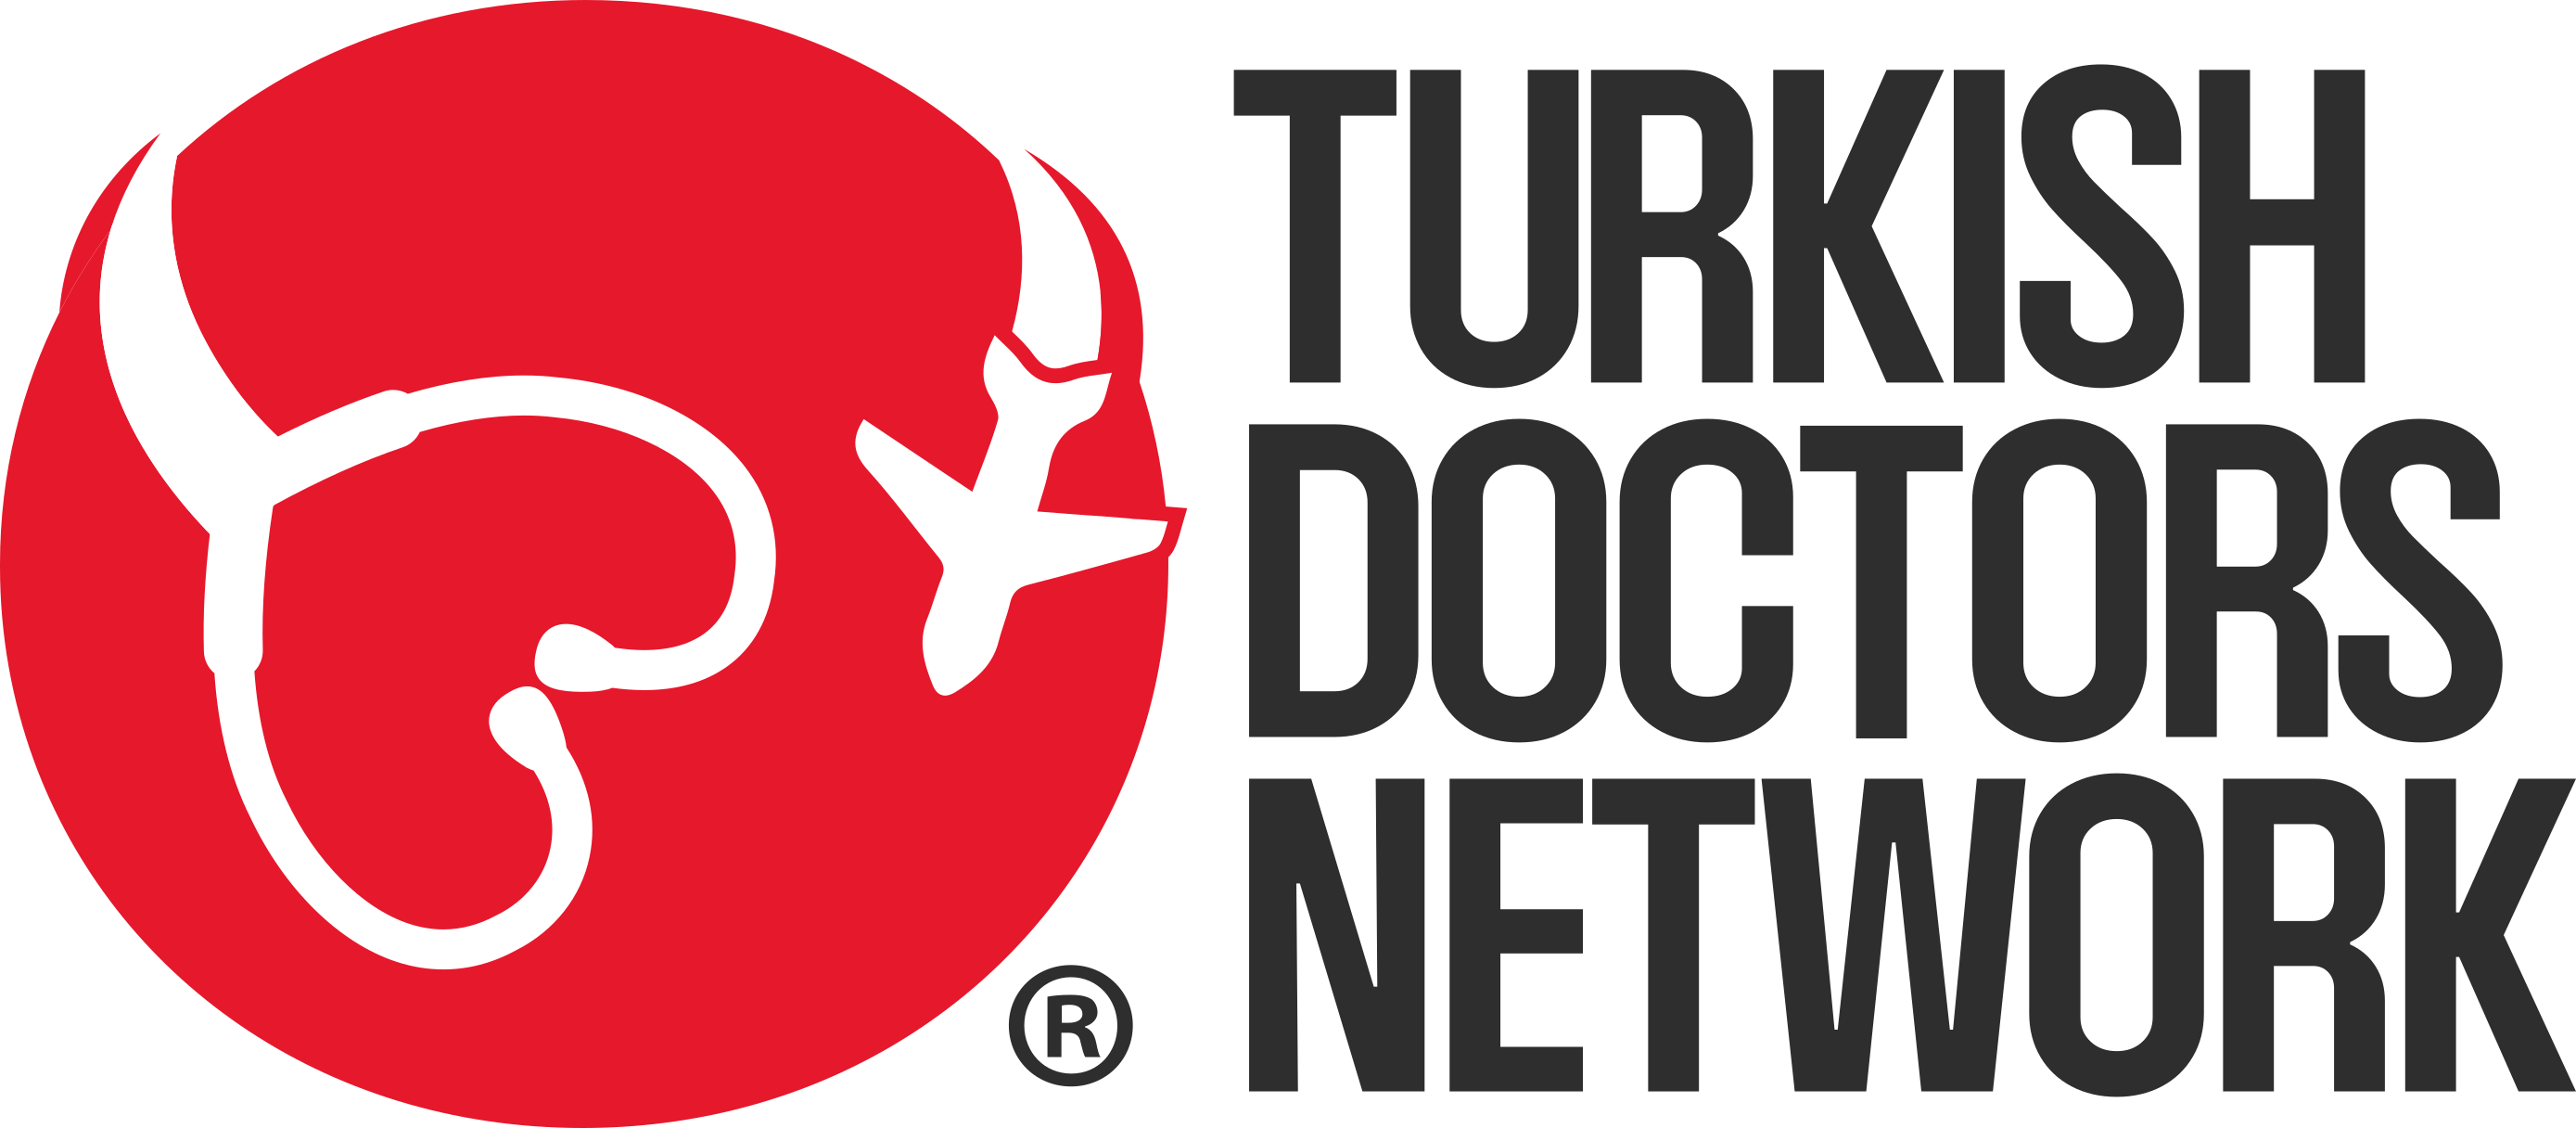 Turkish Doctors Network